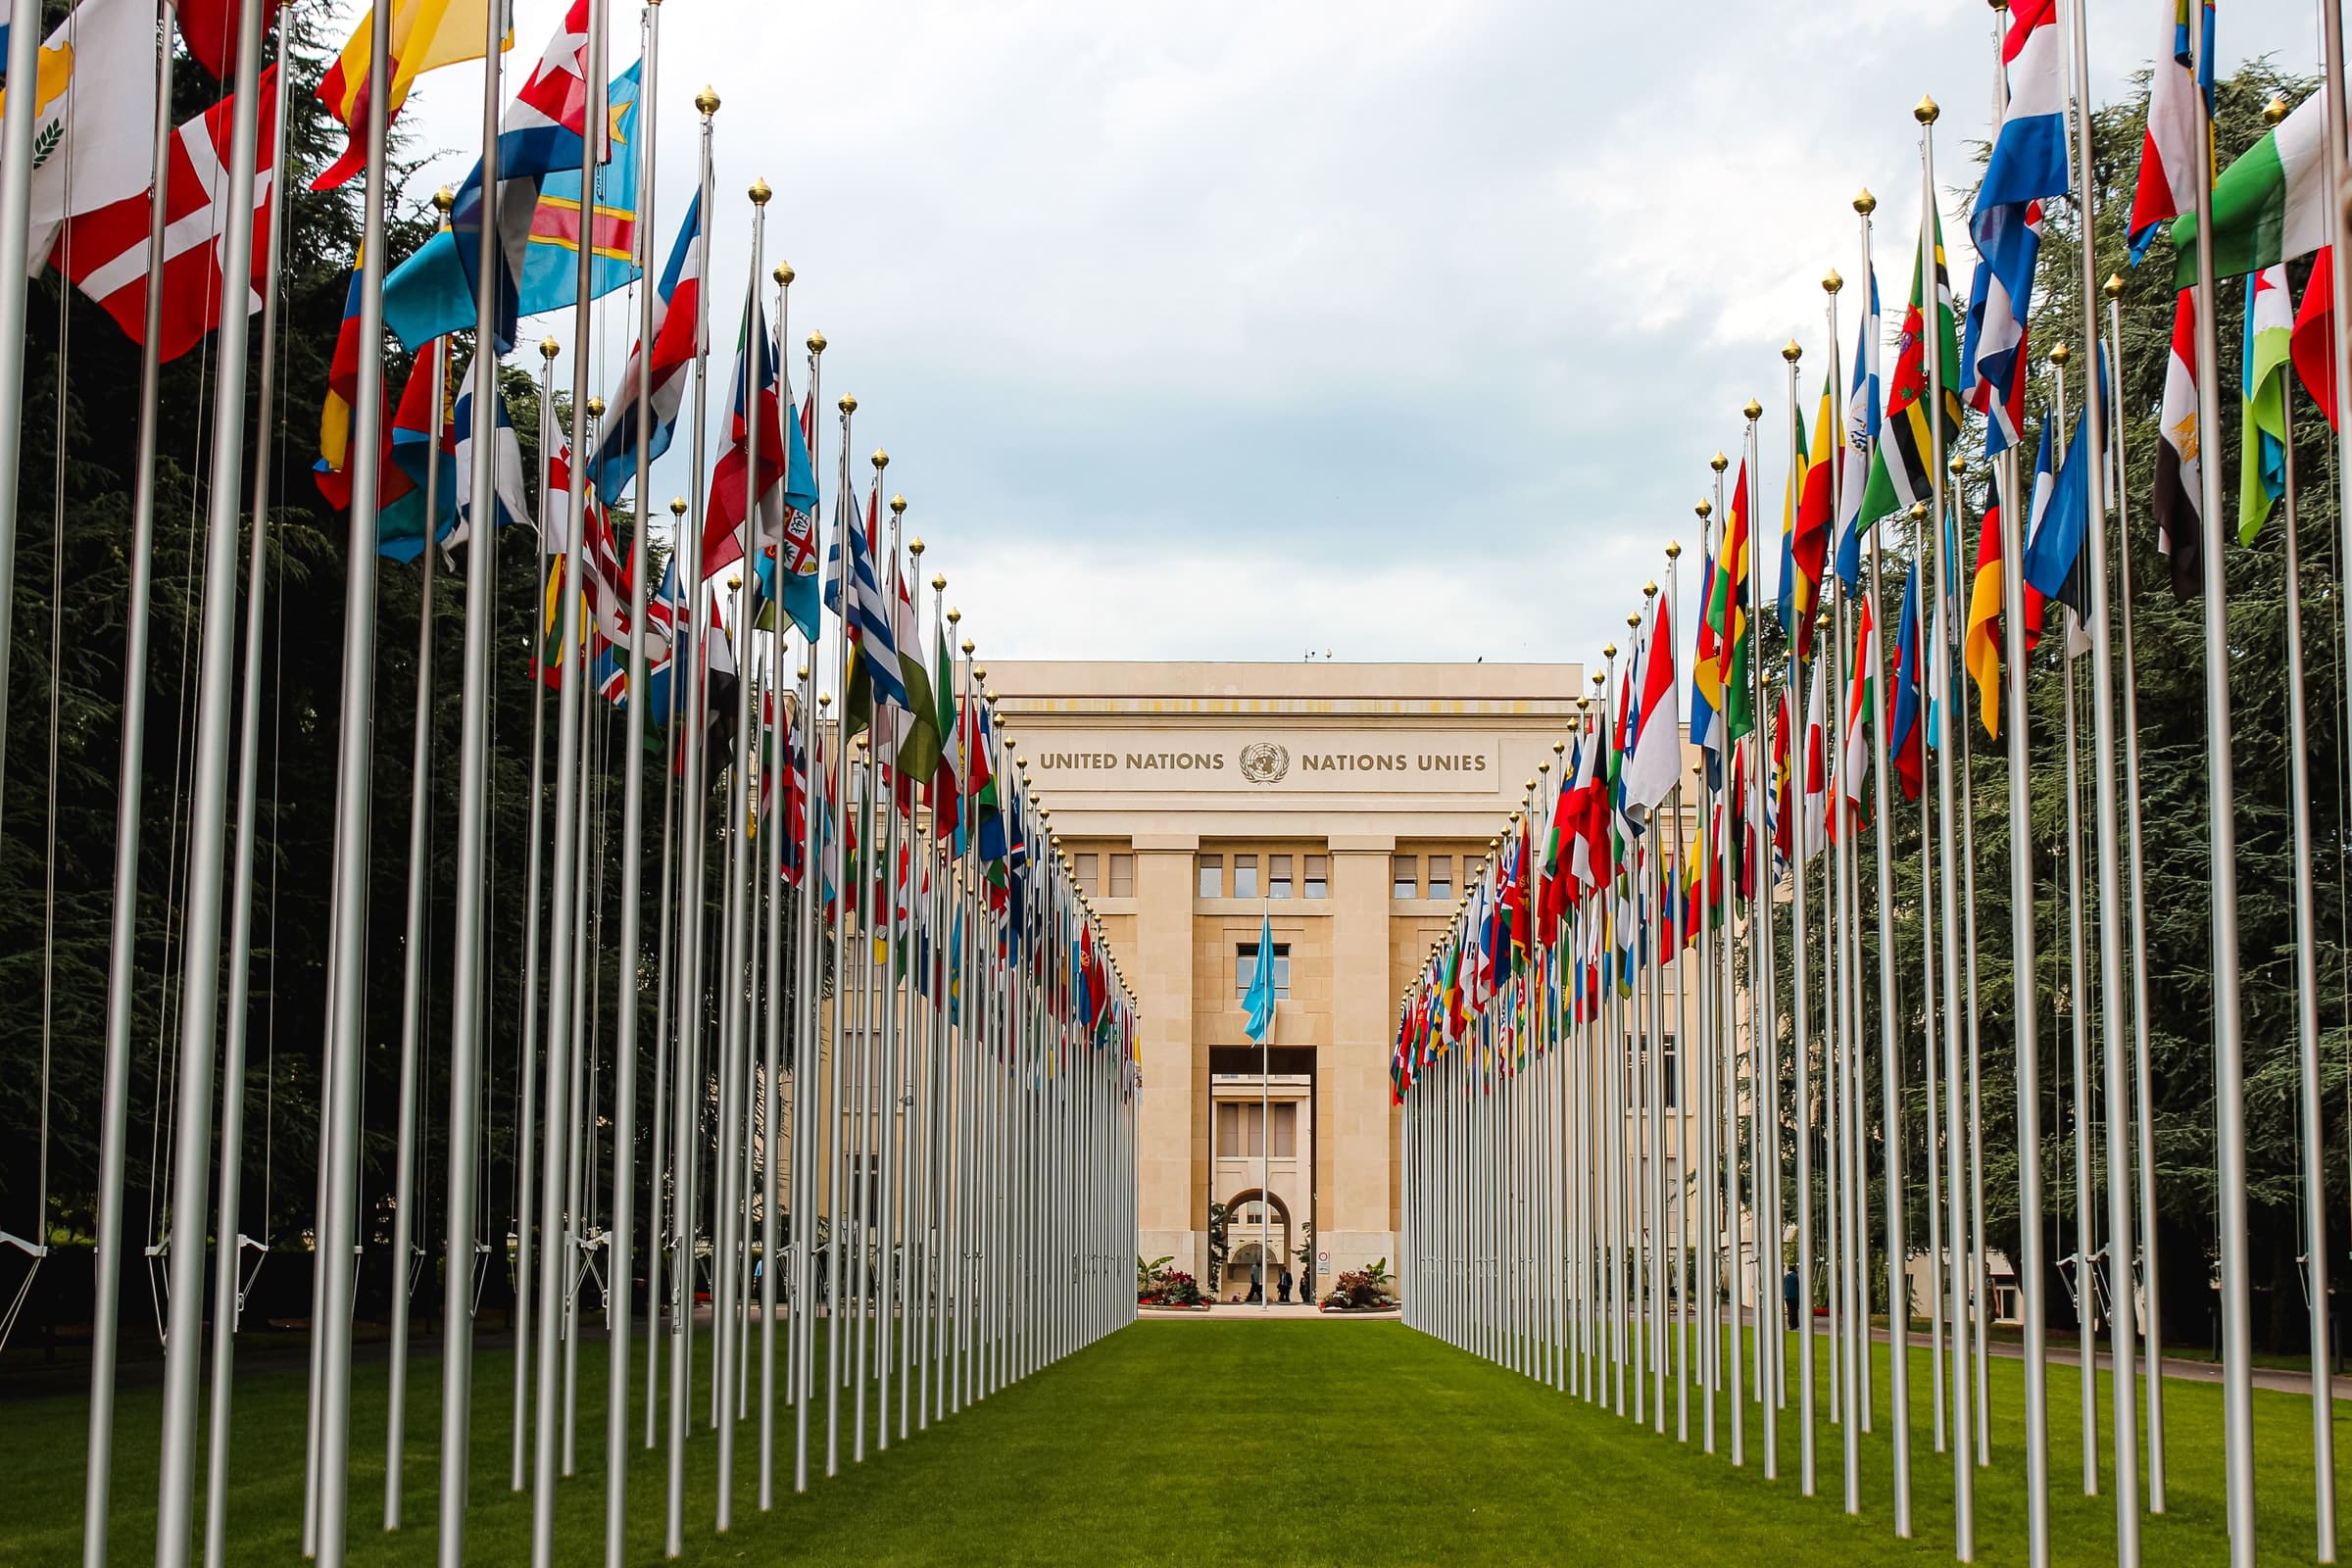 Stavba Združenih narodov | Vse države na svetu